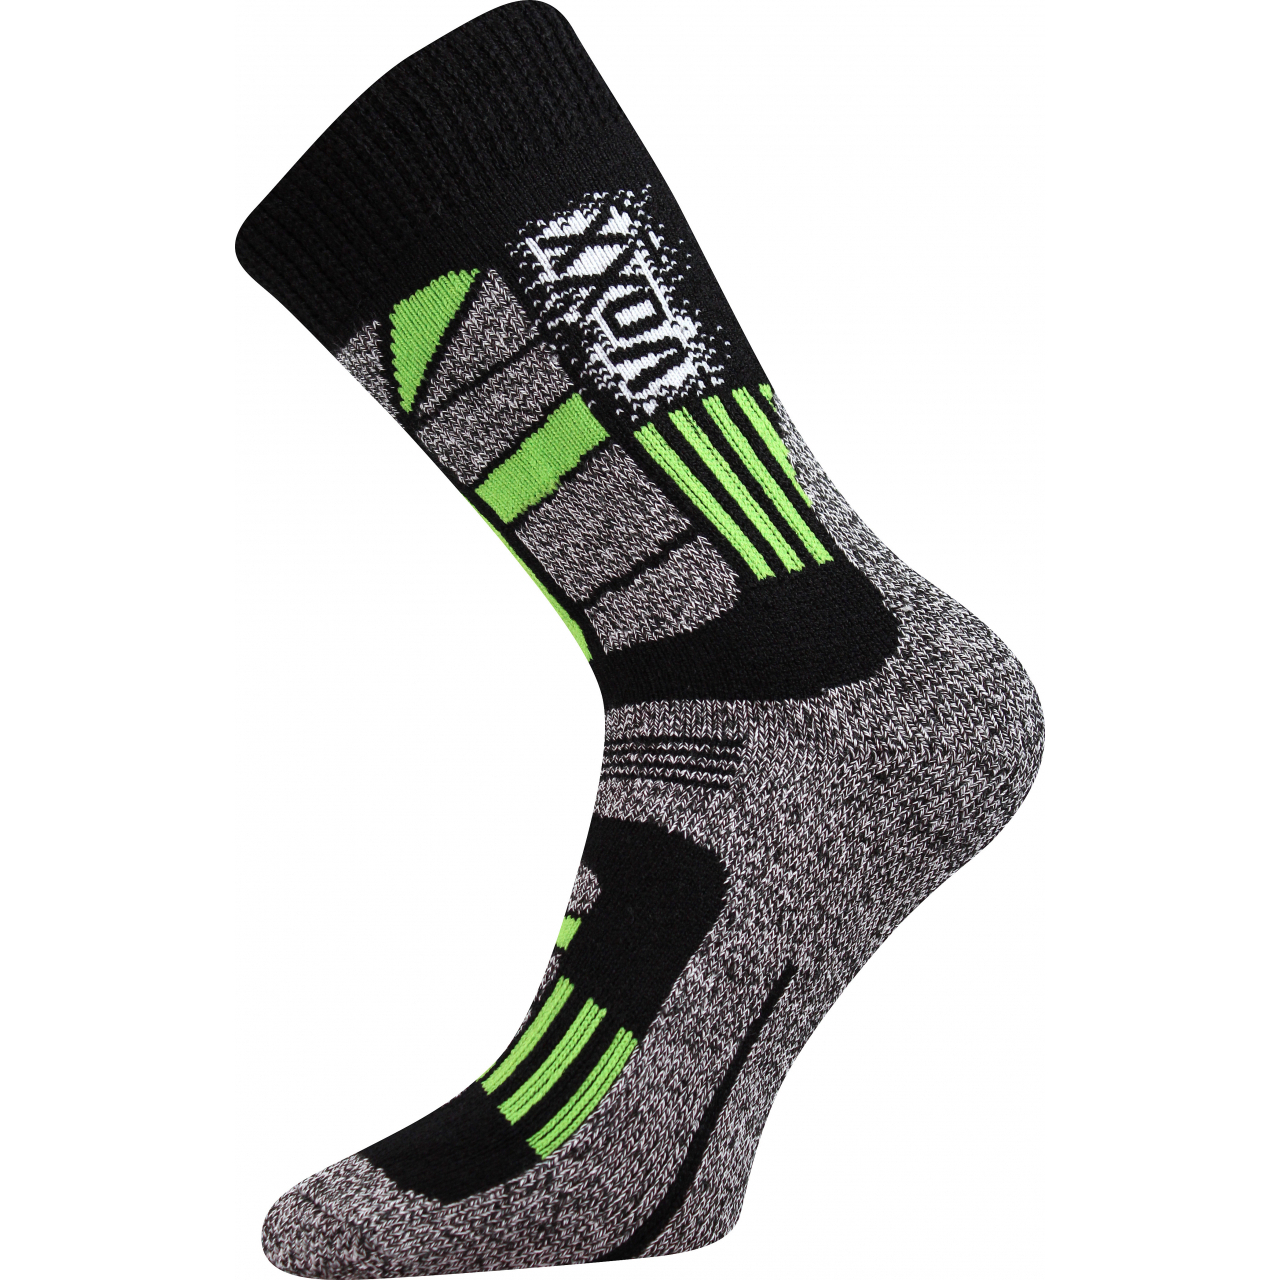 Ponožky unisex termo Voxx Traction I - černé-zelené, 47-50